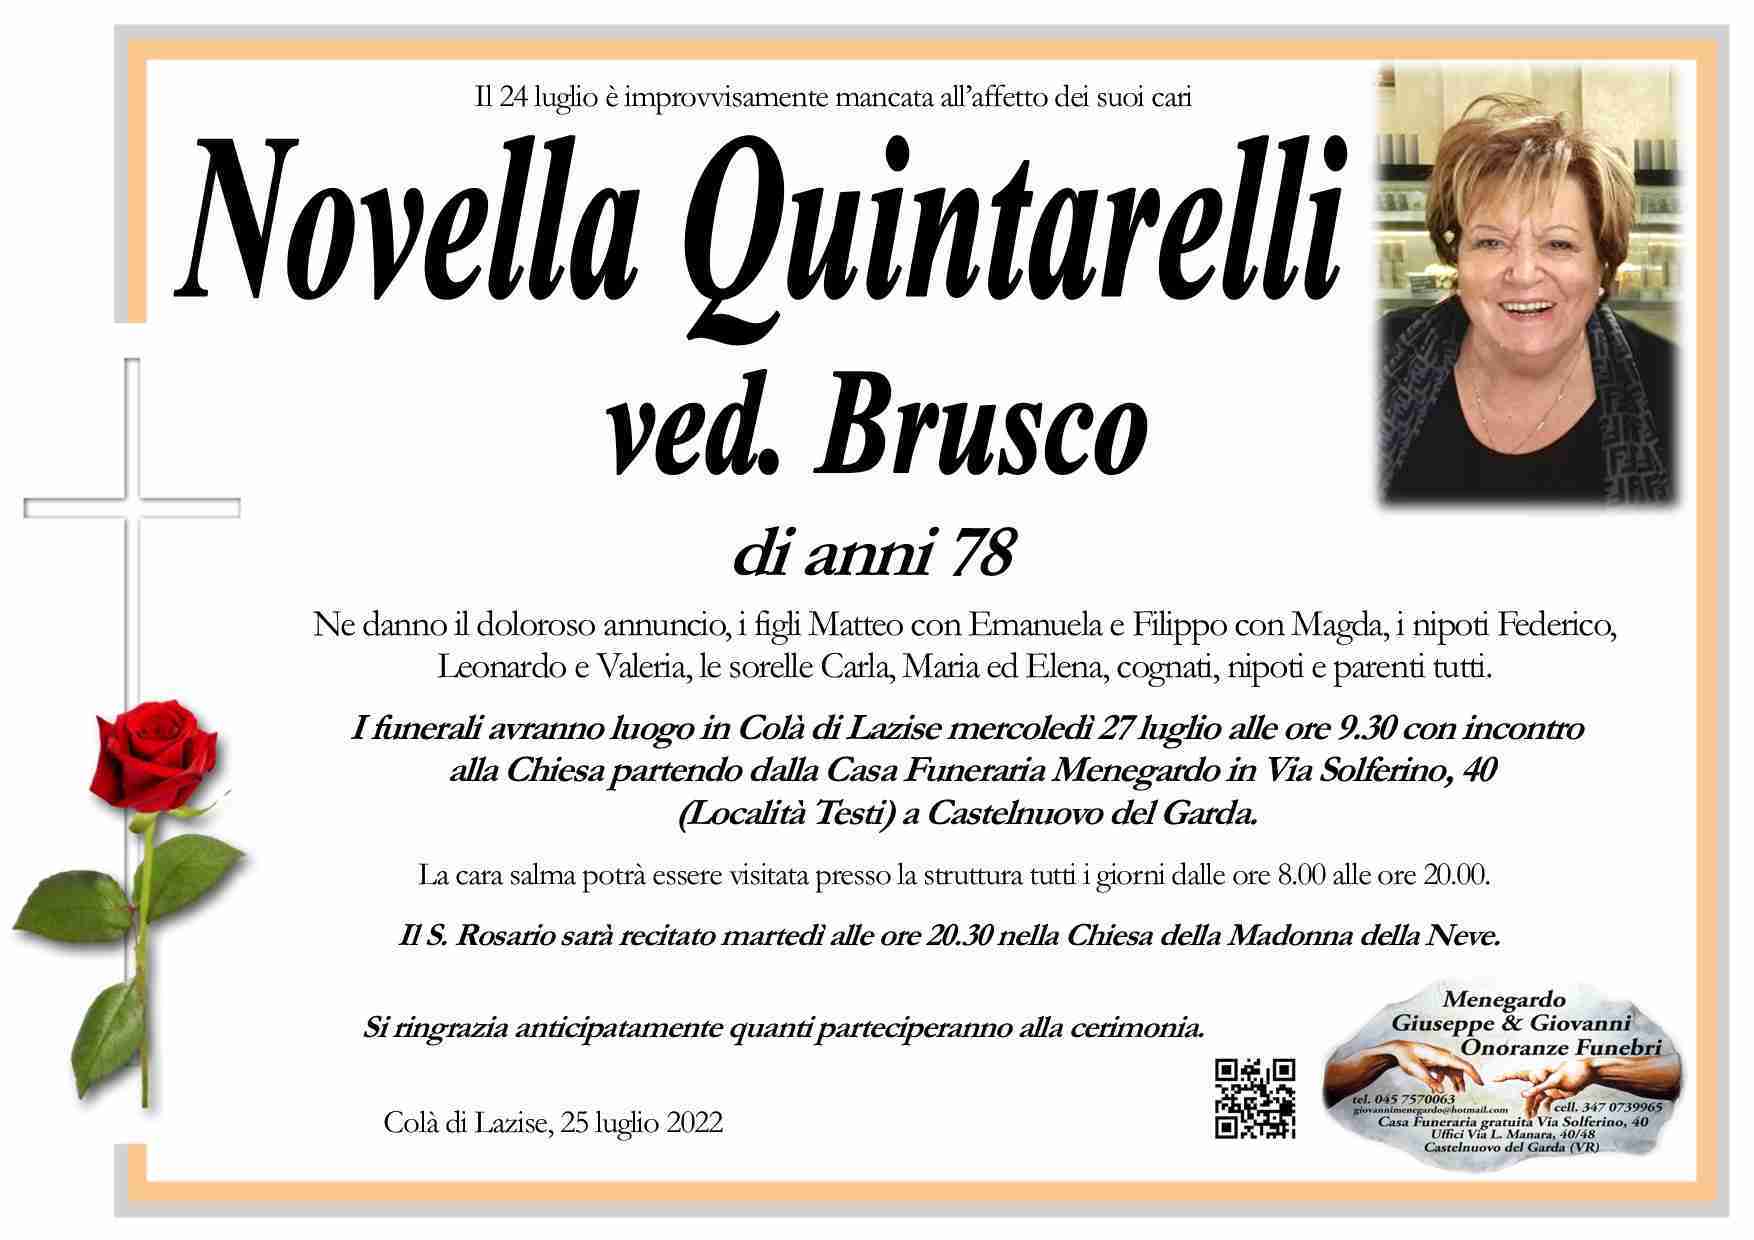 Novella Quintarelli